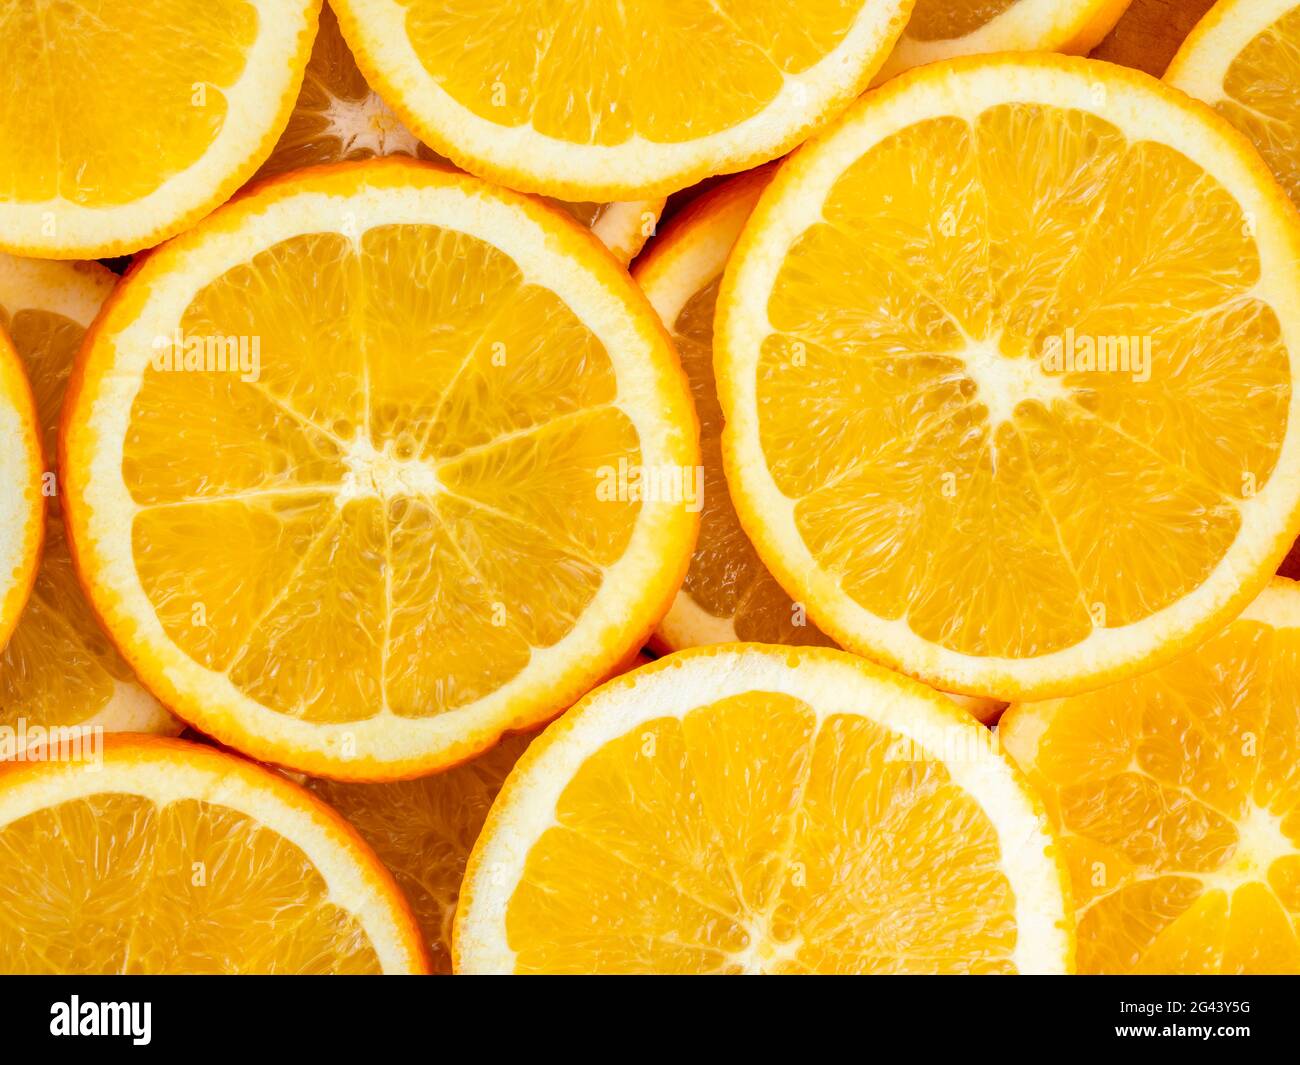 Full frame of orange slices Stock Photo